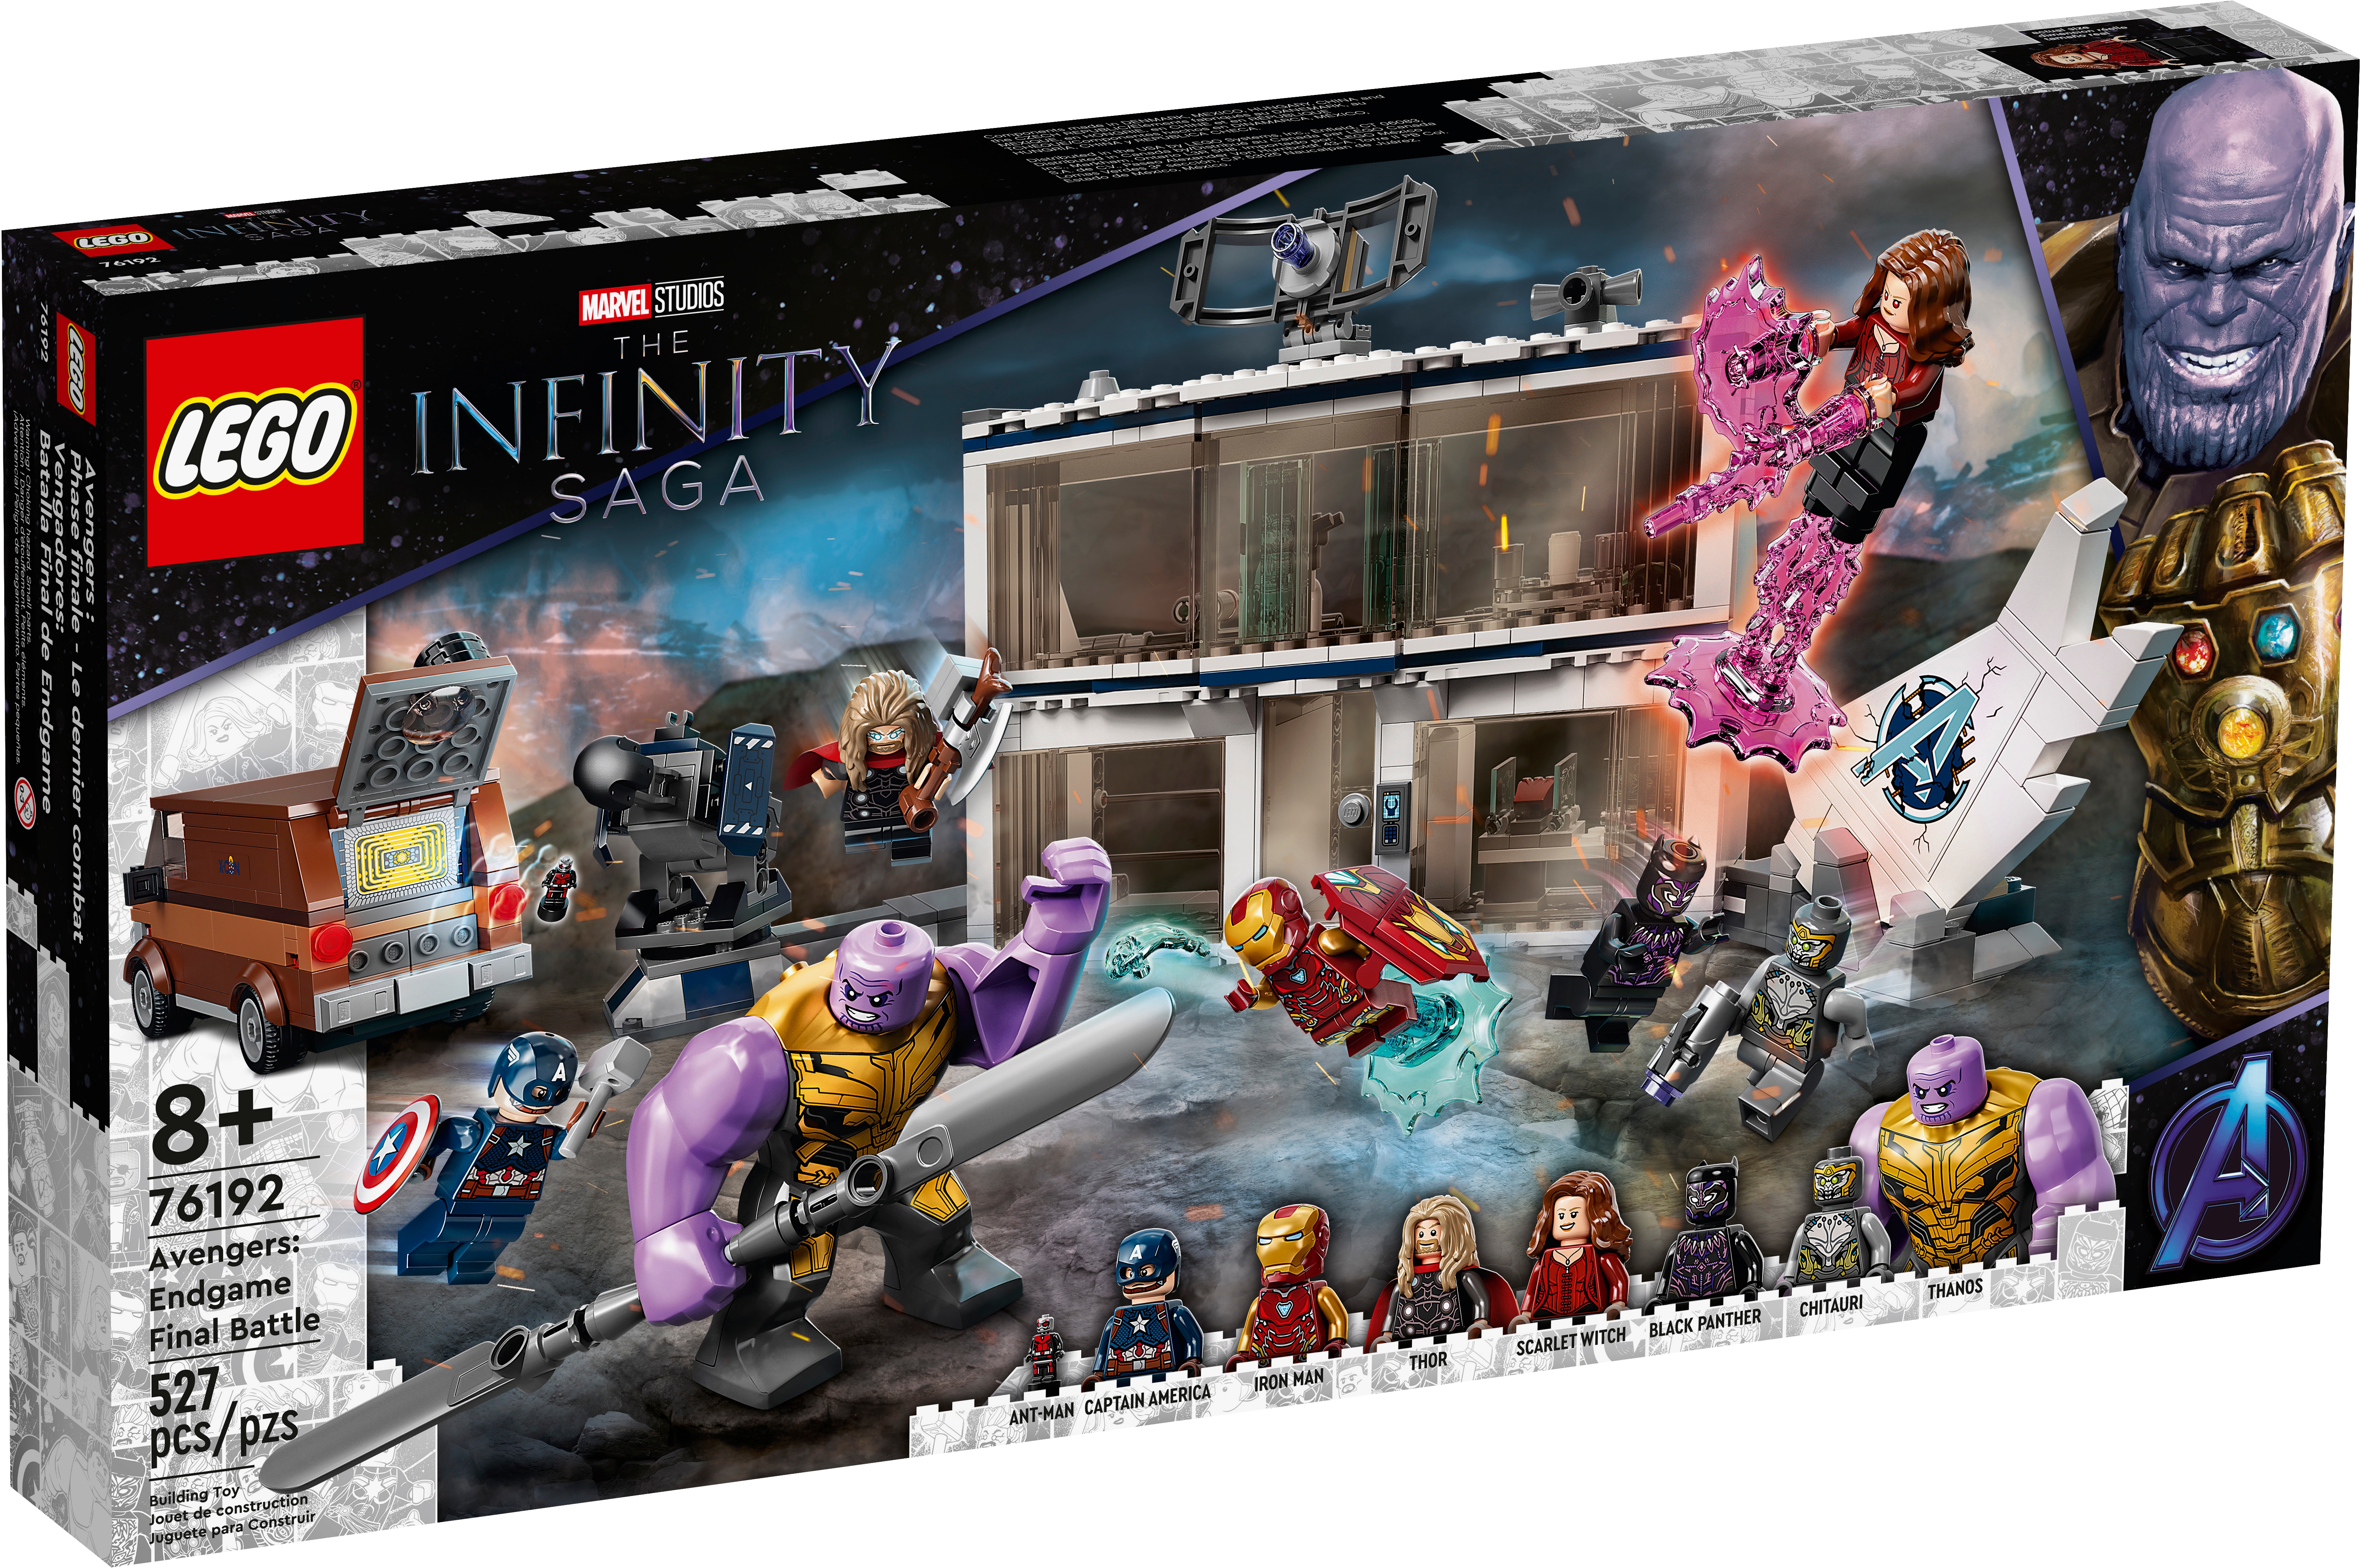 Minifigure Marvel Villain Thanos Avengers Infinity War Endgame 3'' figure 